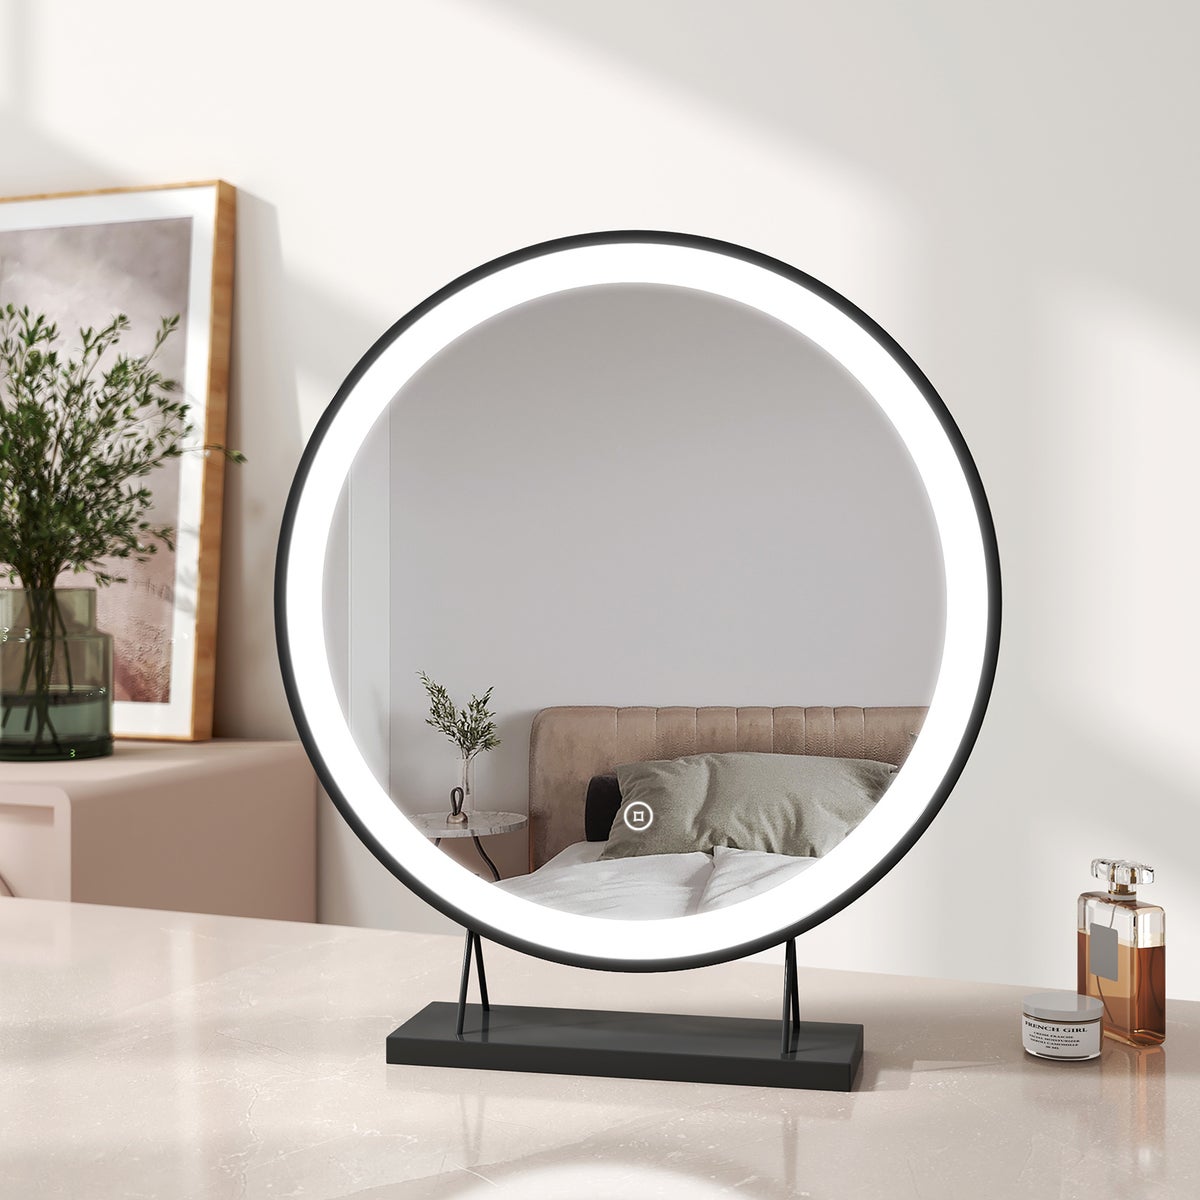 EMKE Schminkspiegel LED Kosmetikspiegel Rund Tischspiegel mit Beleuchtung, mit Touch, 3 Lichtfarben,Dimmbar, Memory-Funktion Schwarz ф48cm